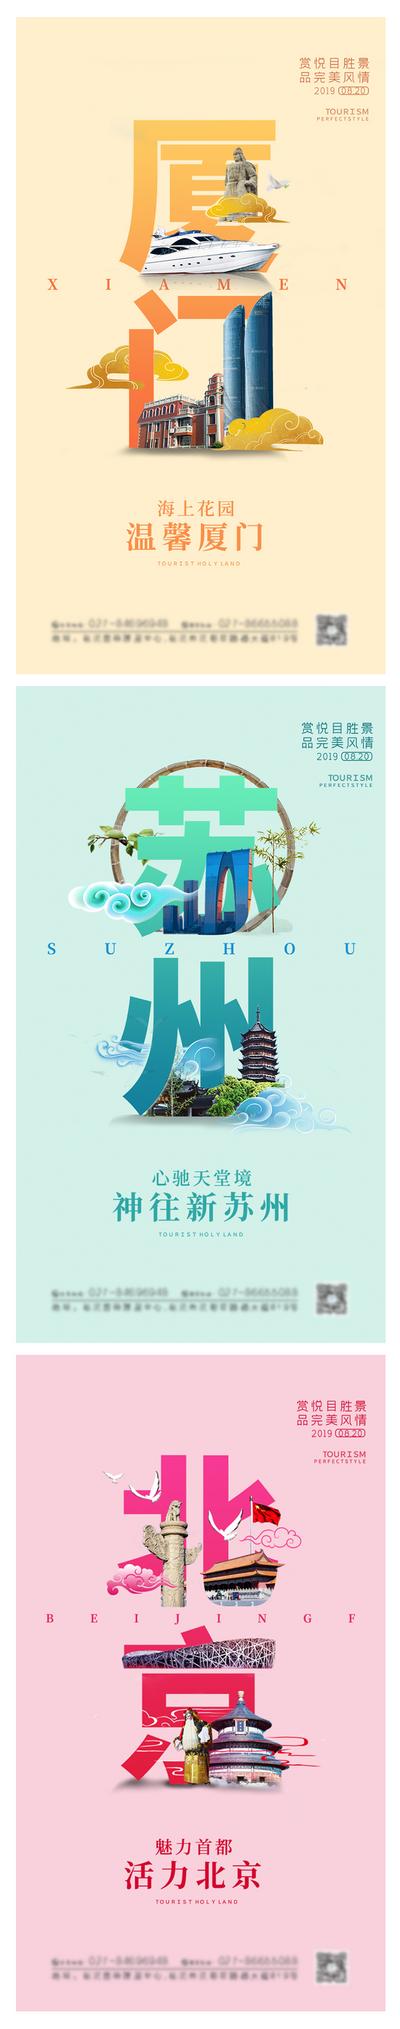 南门网 厦门苏州北京旅游景点系列海报